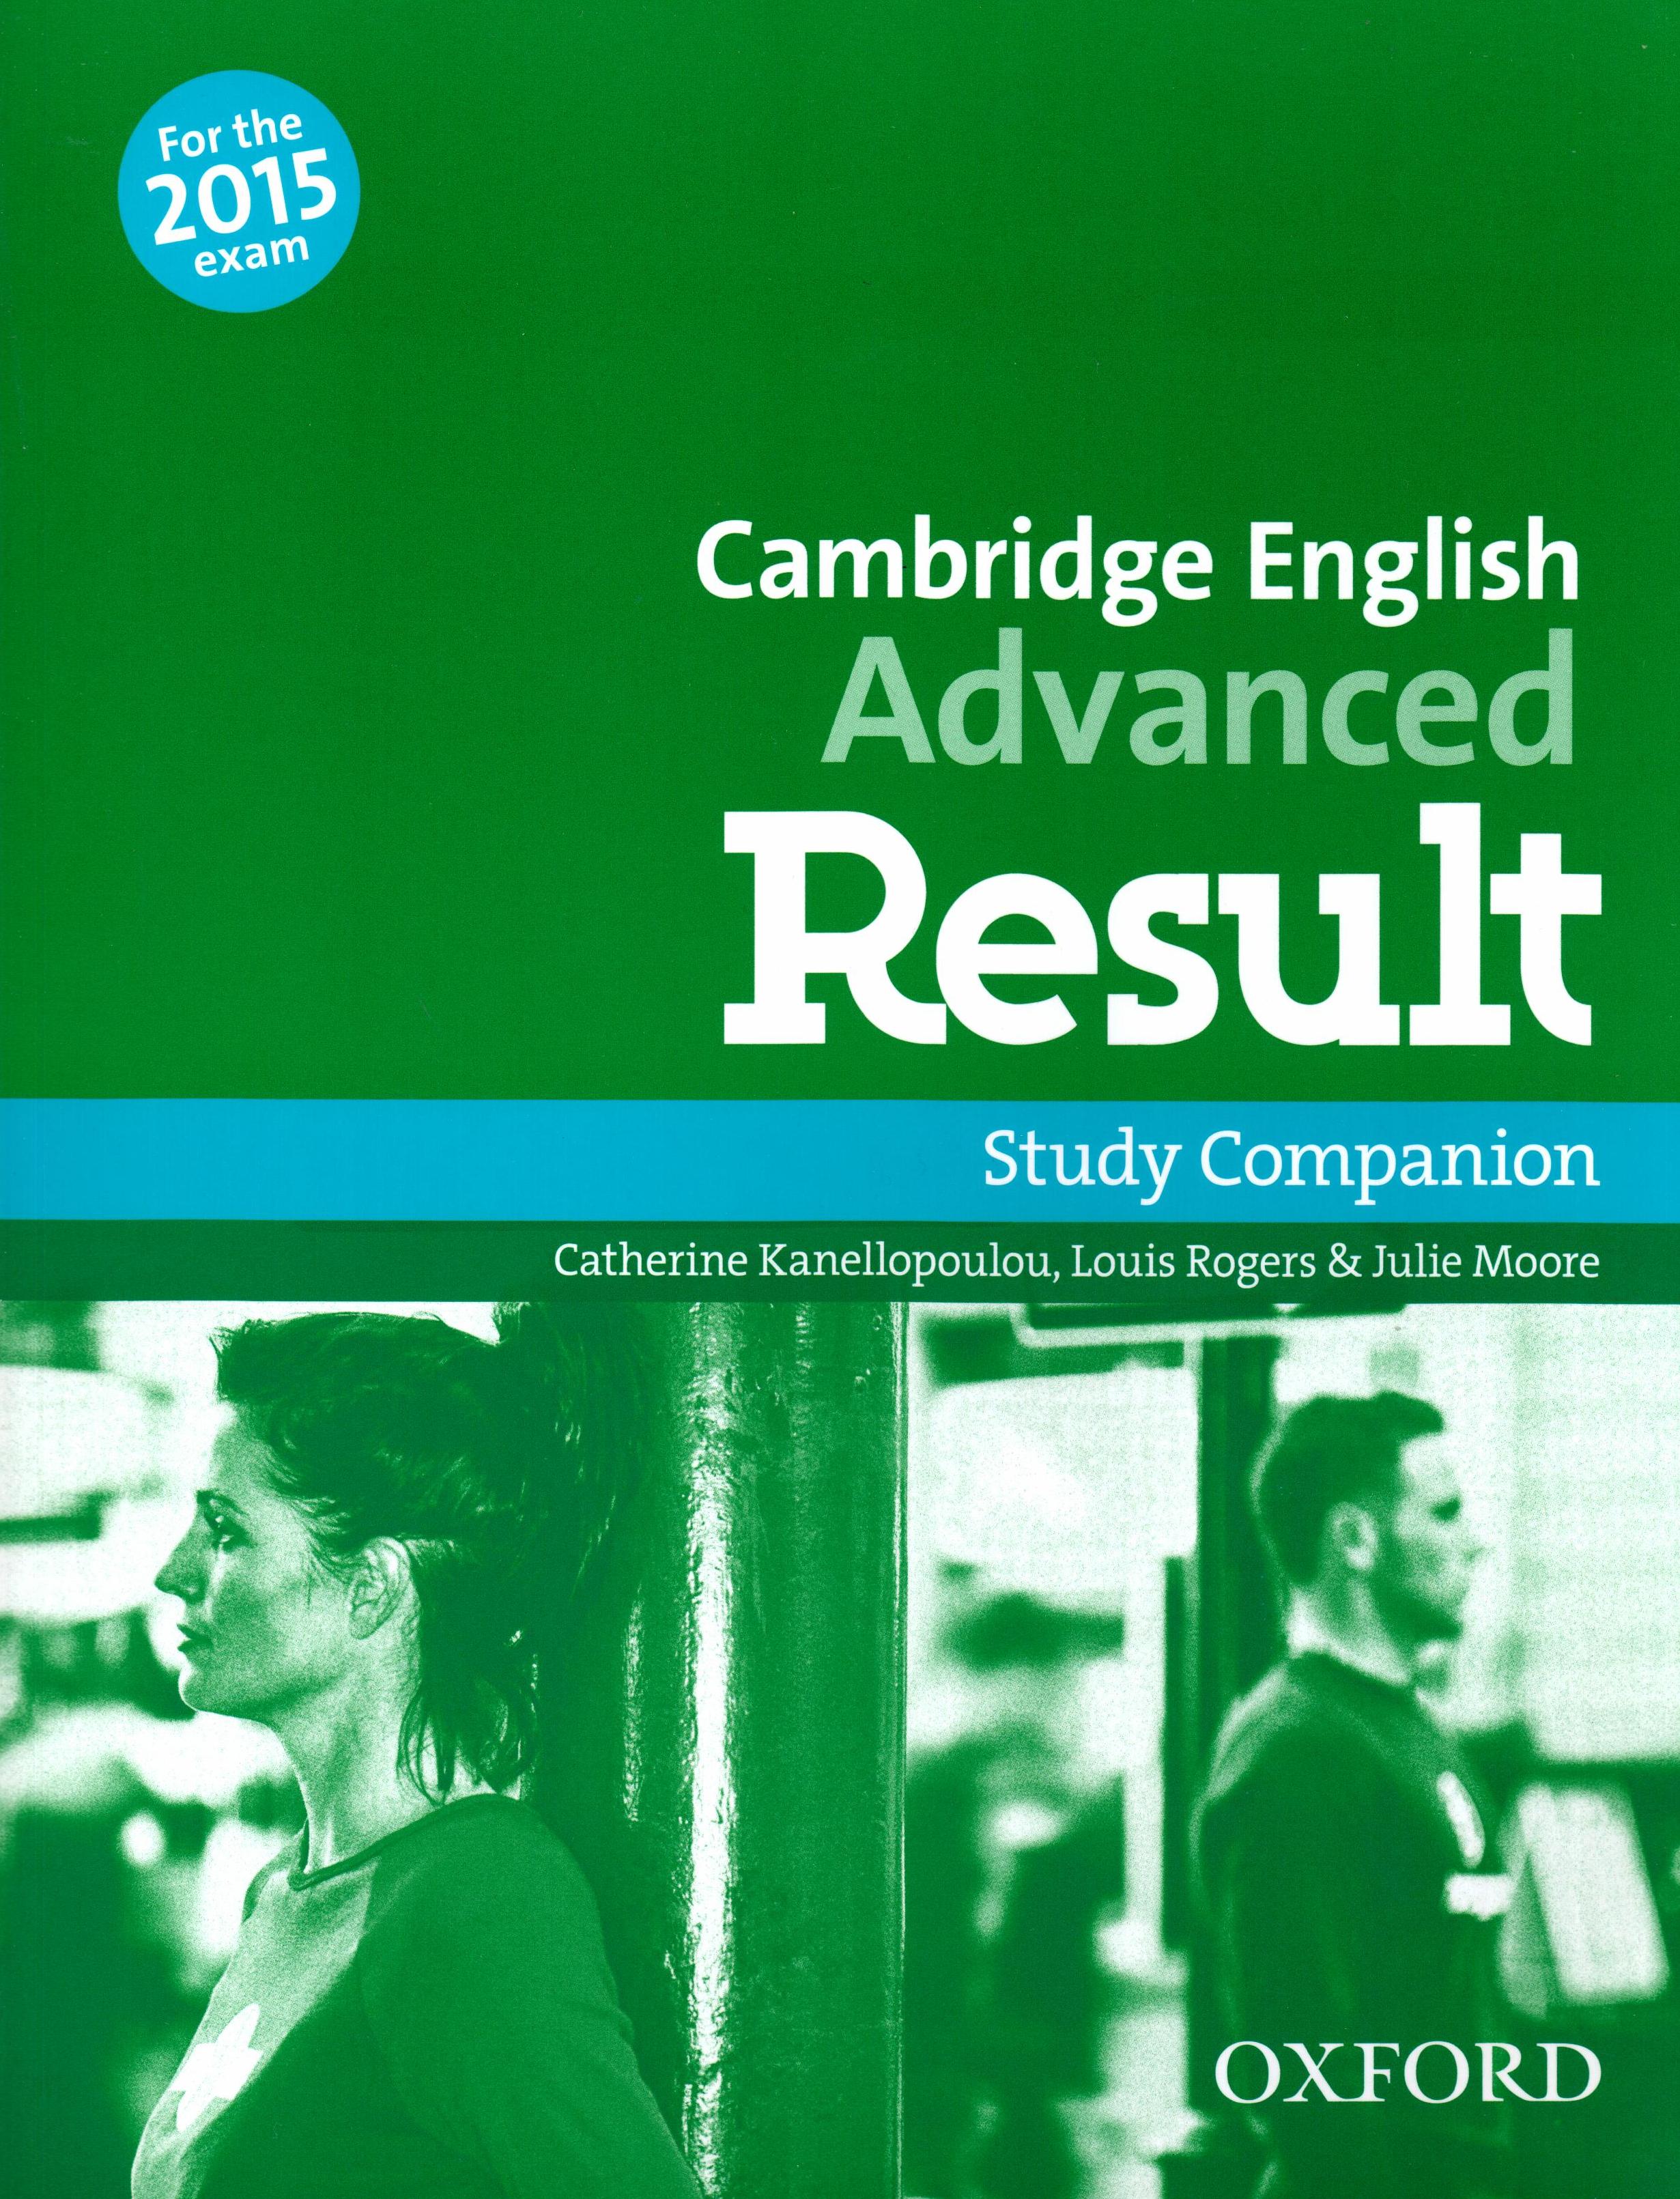 CAMBRIDGE ENGLISH ADVANCED RESULT COMPANION N E